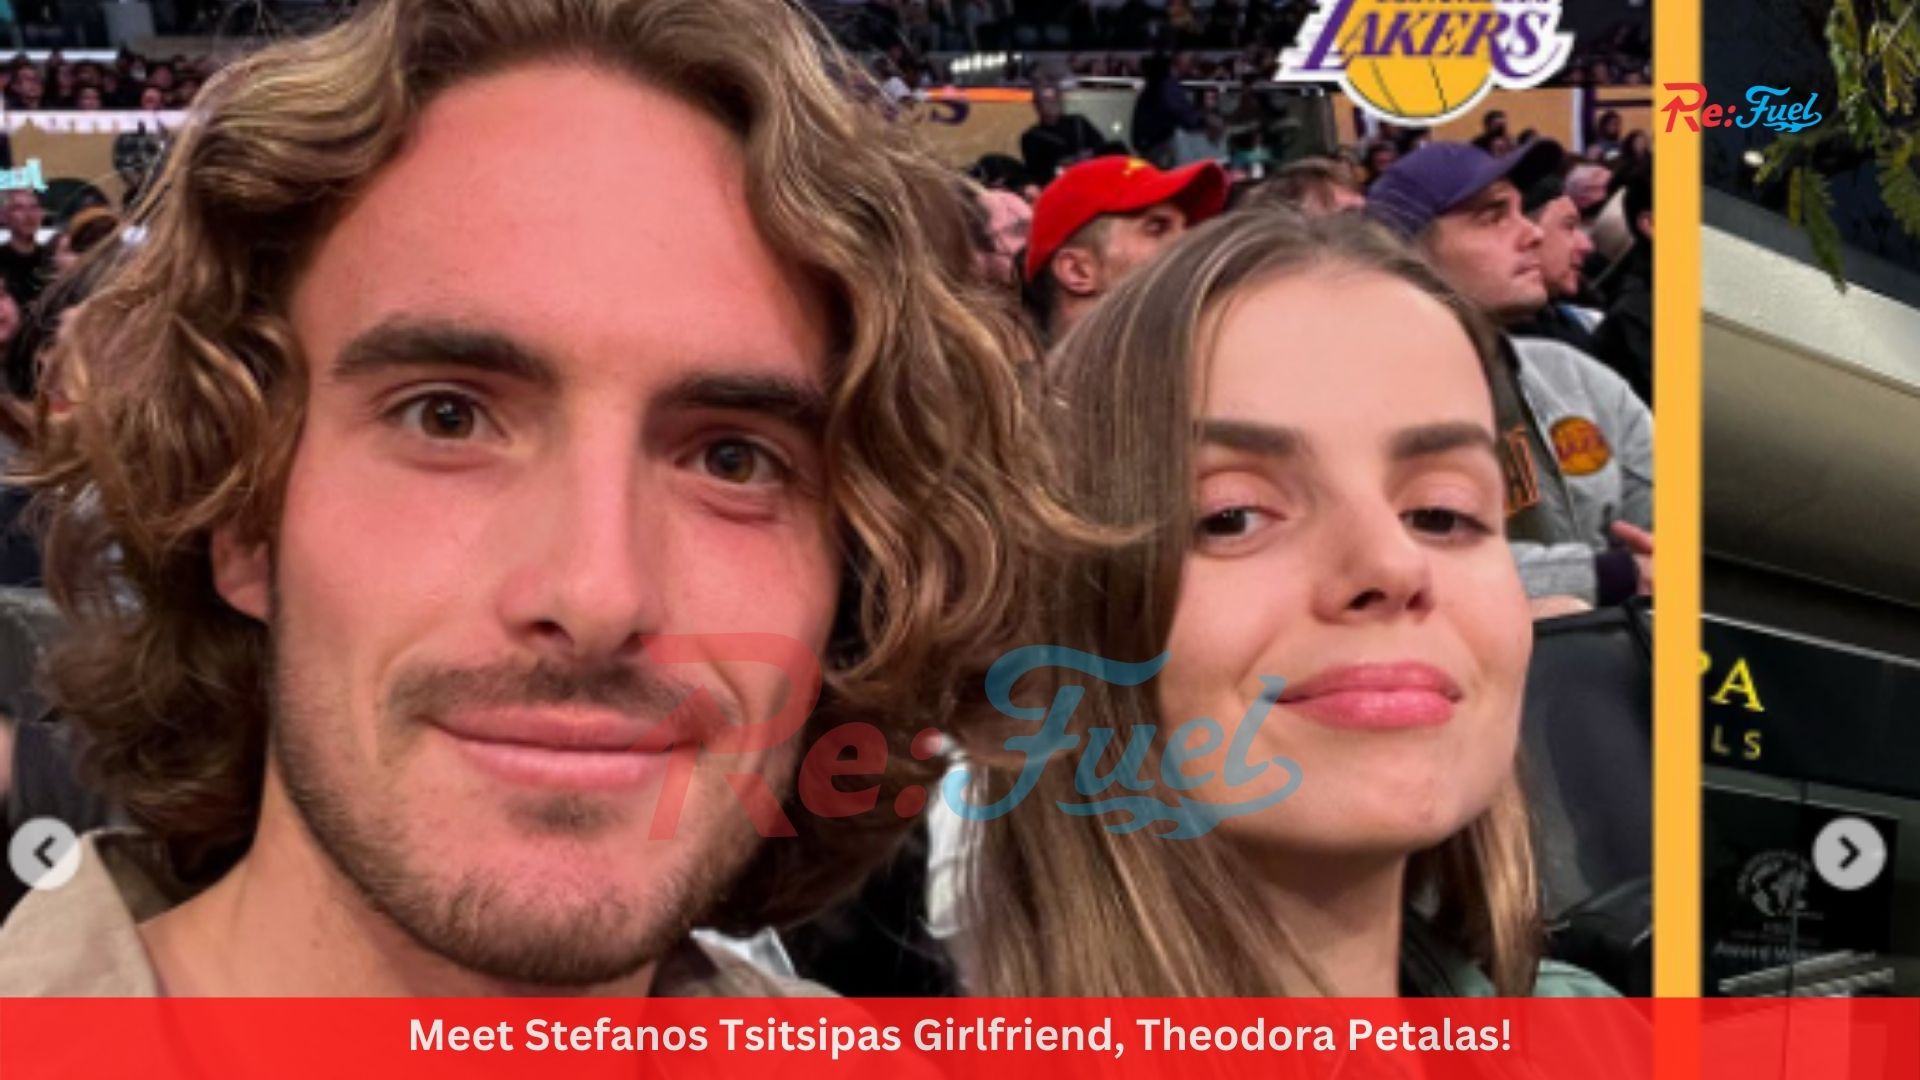 Meet Stefanos Tsitsipas Girlfriend, Theodora Petalas!